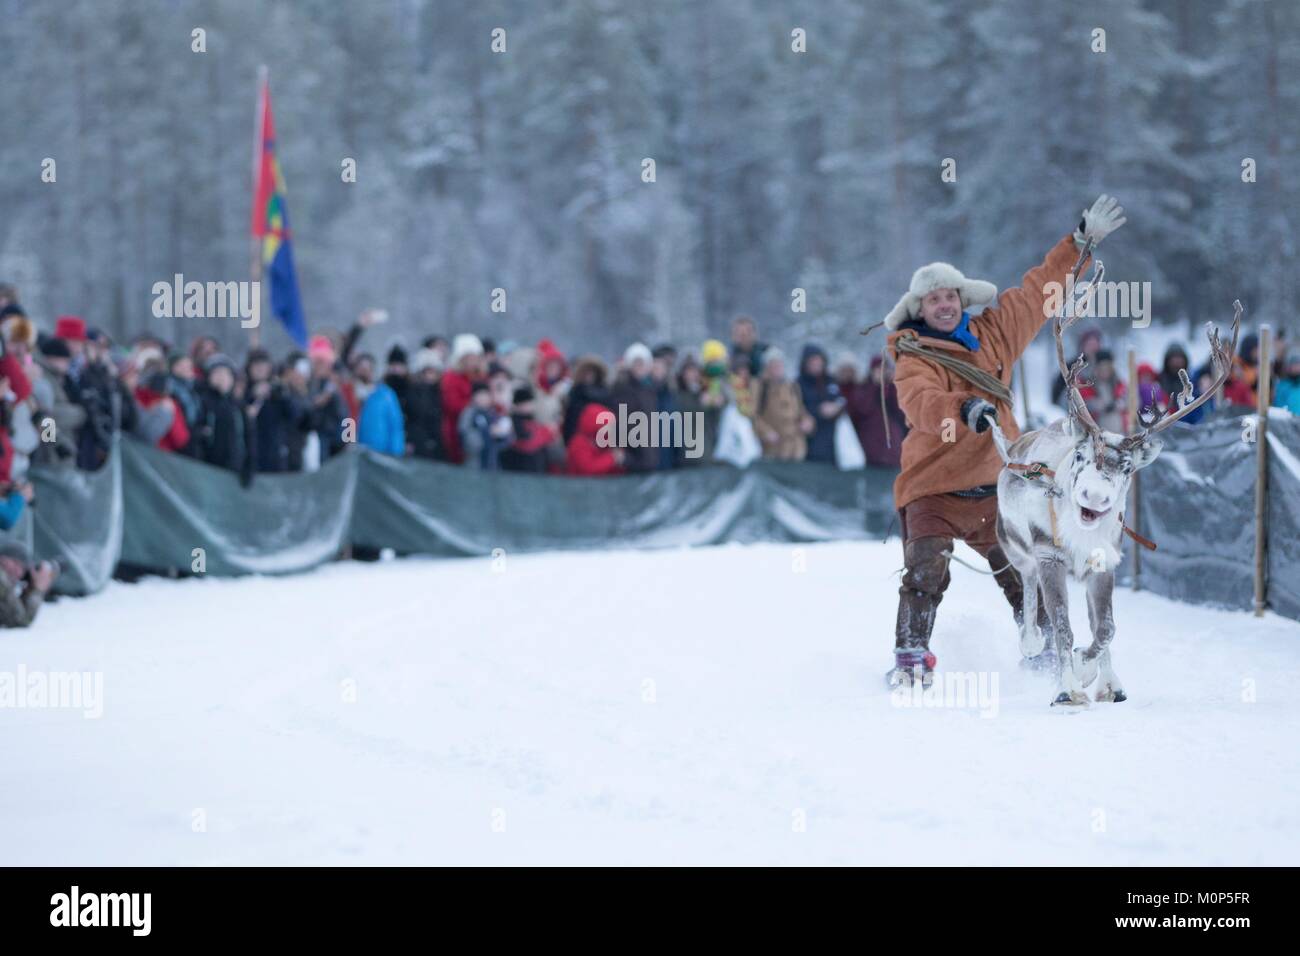 Schweden, Lappland, Region als Weltkulturerbe von der UNESCO, Norrbottens Län aufgeführt, Sami demonstration Turm Gleiten auf Schnee während der jokkmokk Sami rentier Rennen Stockfoto